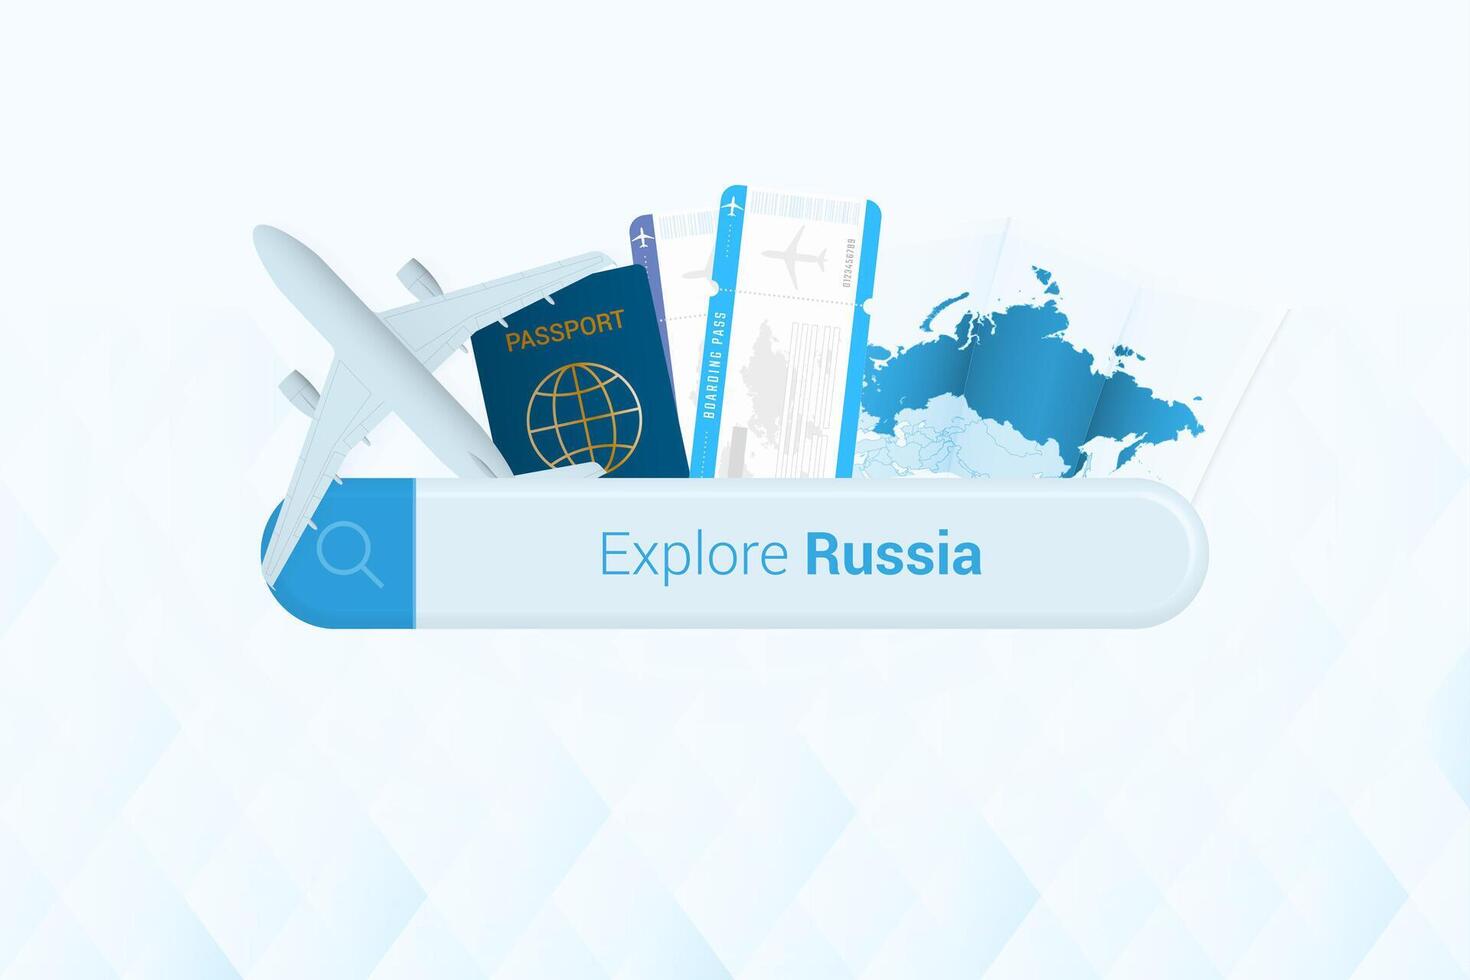 suchen Tickets zu Russland oder Reise Ziel im Russland. suchen Bar mit Flugzeug, Reisepass, Einsteigen passieren, Tickets und Karte. vektor